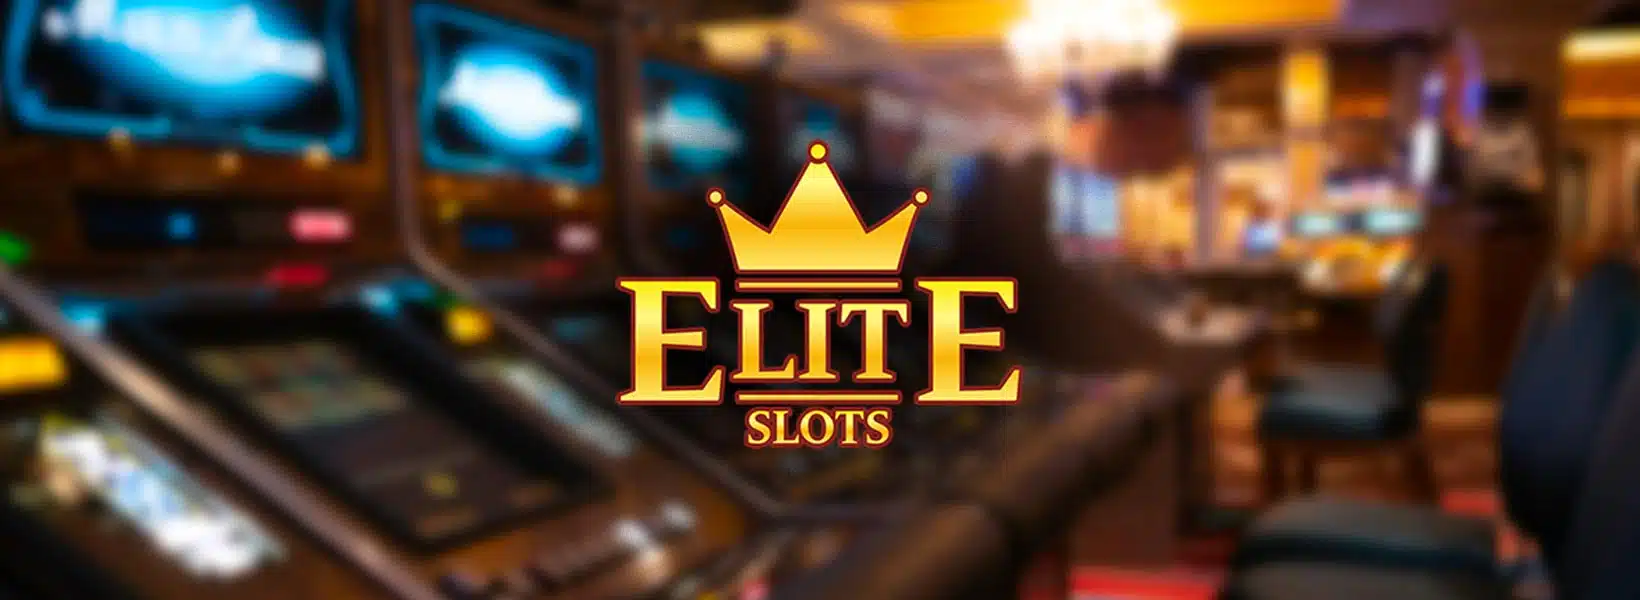 agenții elite slots